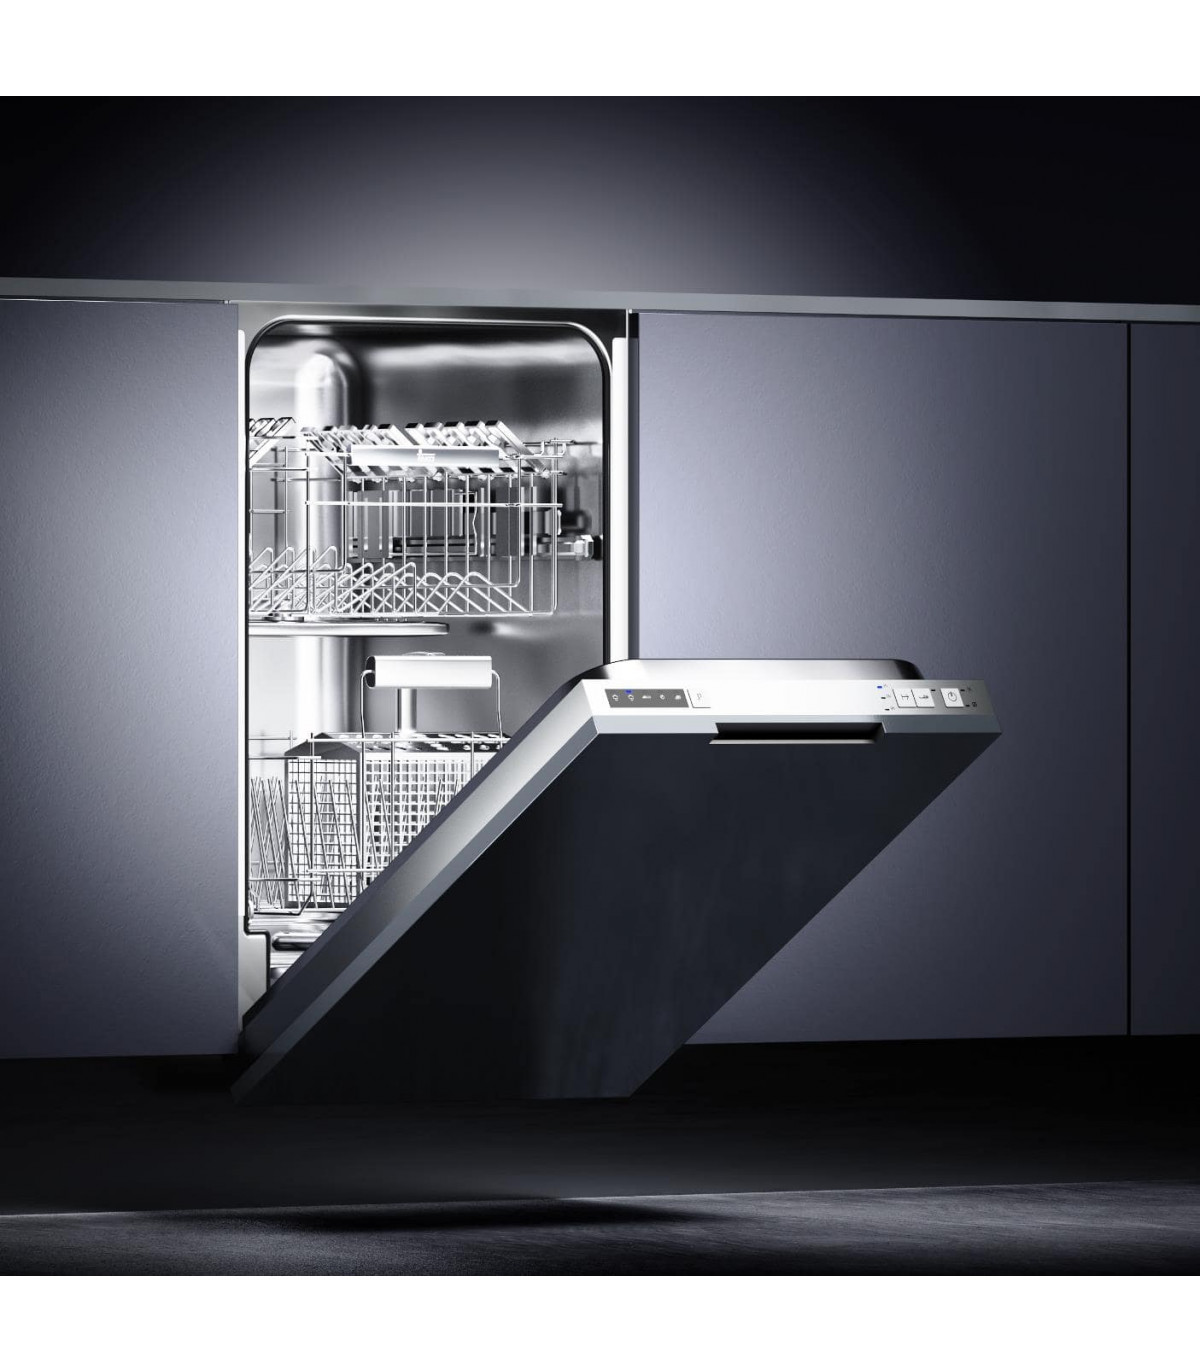 Купить посудомоечную машину 60 см встраиваемая bosch. Посудомойка Teka dw7 45 Fi внутри. Полновстраиваемая посудомоечная машина 45 см. Встраиваемая посудомоечная машина Samsung. Посудомойка Beko встраиваемая 60.